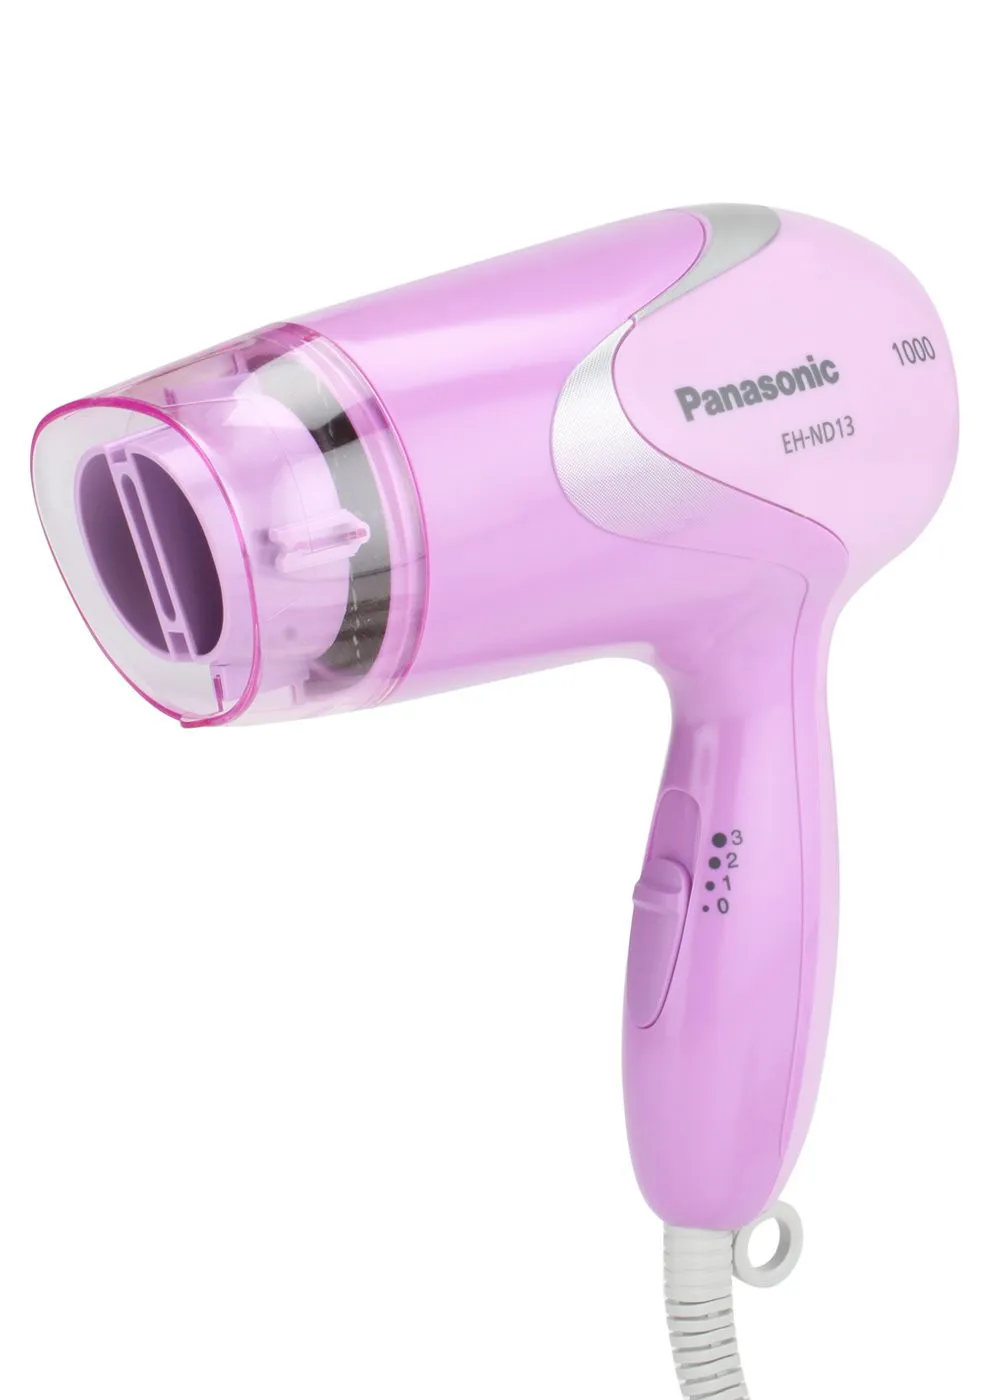 Фен для волос Panasonic EH-ND13 Фиолетовый#2